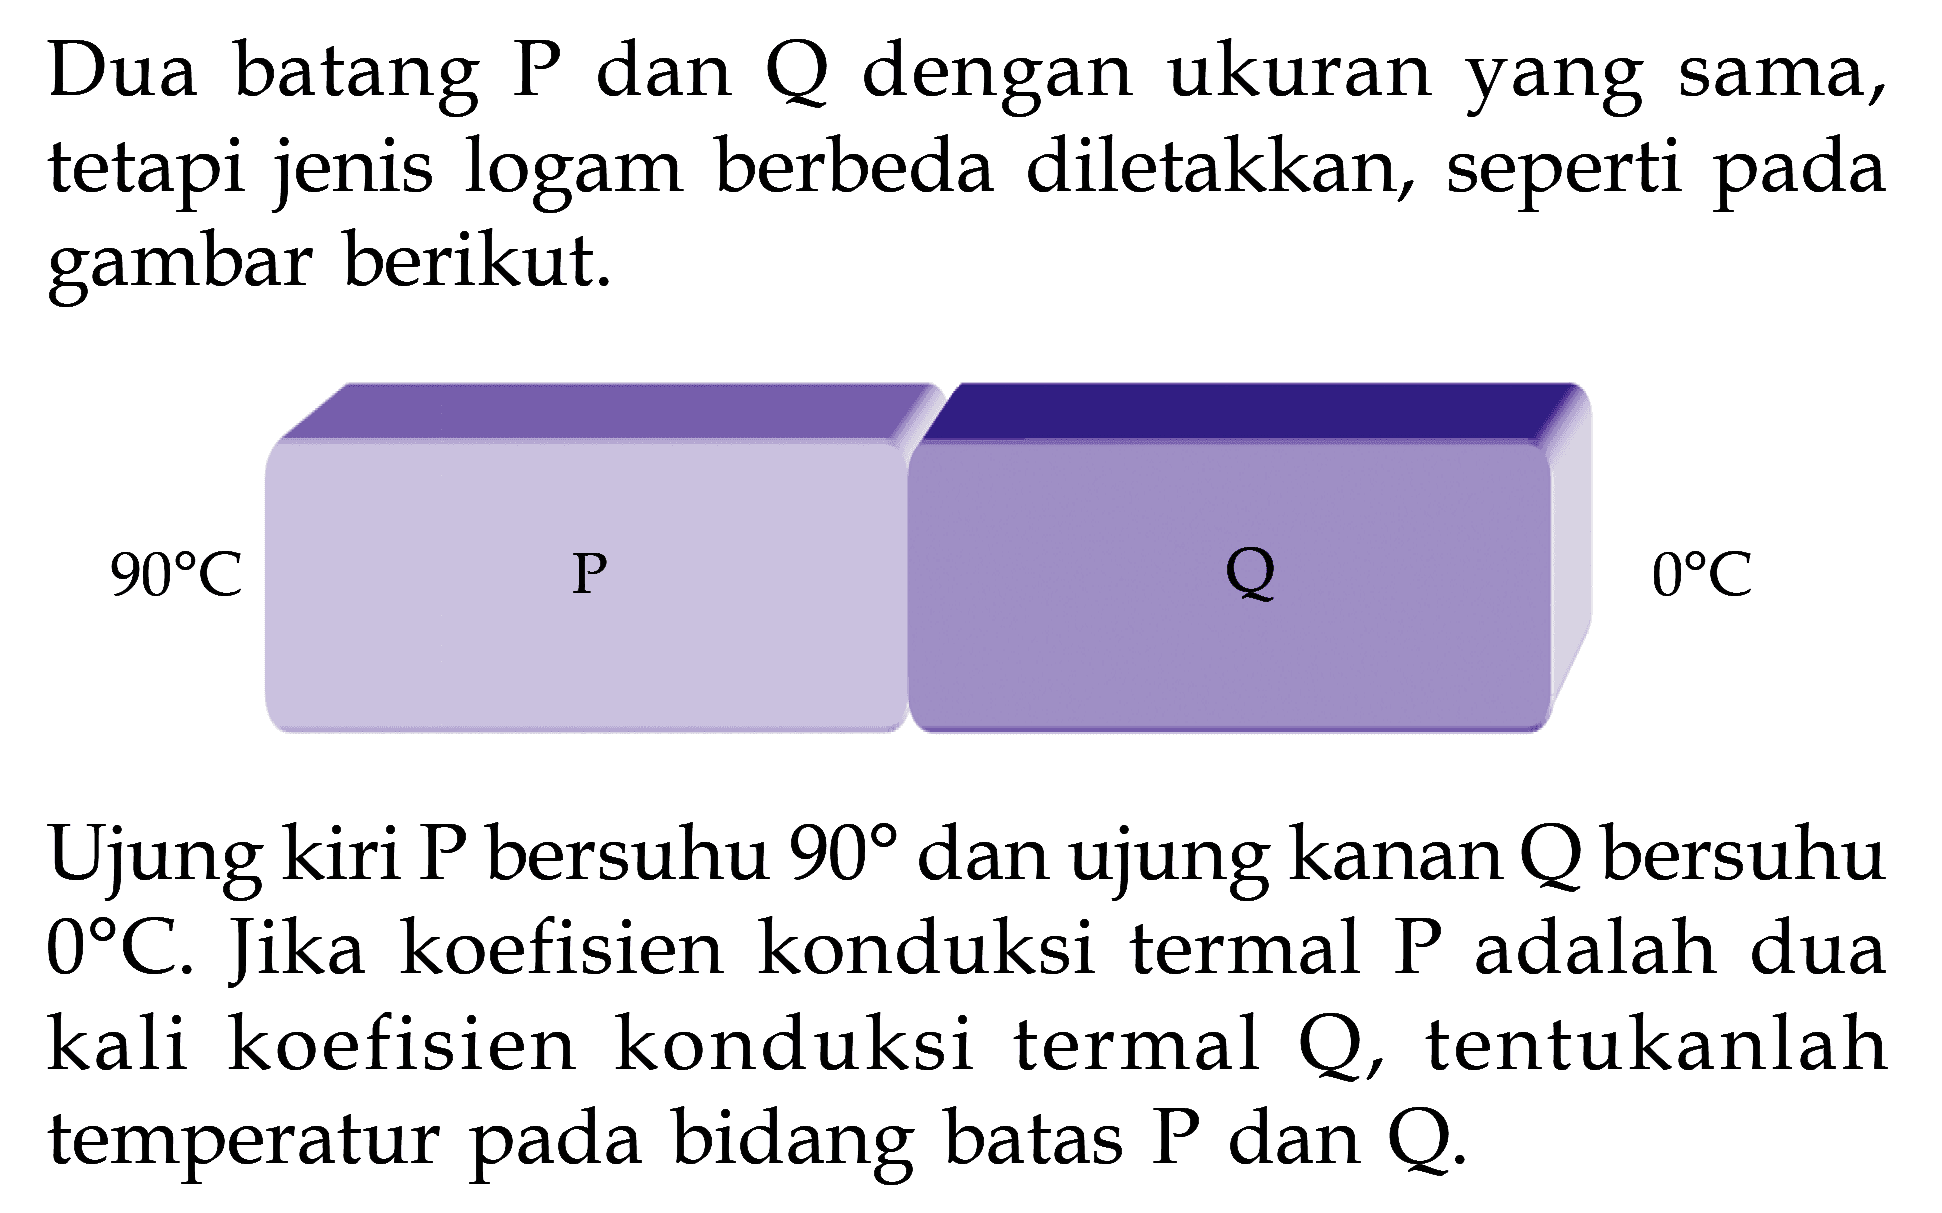 Dua batang P dan Q dengan ukuran yang sama, tetapi jenis logam berbeda diletakkan, seperti pada gambar berikut. 90 C P 0 C Ujung kiri P bersuhu 90 dan ujung kanan Q bersuhu 0 C. Jika koefisien konduksi termal P adalah dua kali koefisien konduksi termal Q, tentukanlah temperatur pada bidang batas P dan Q.